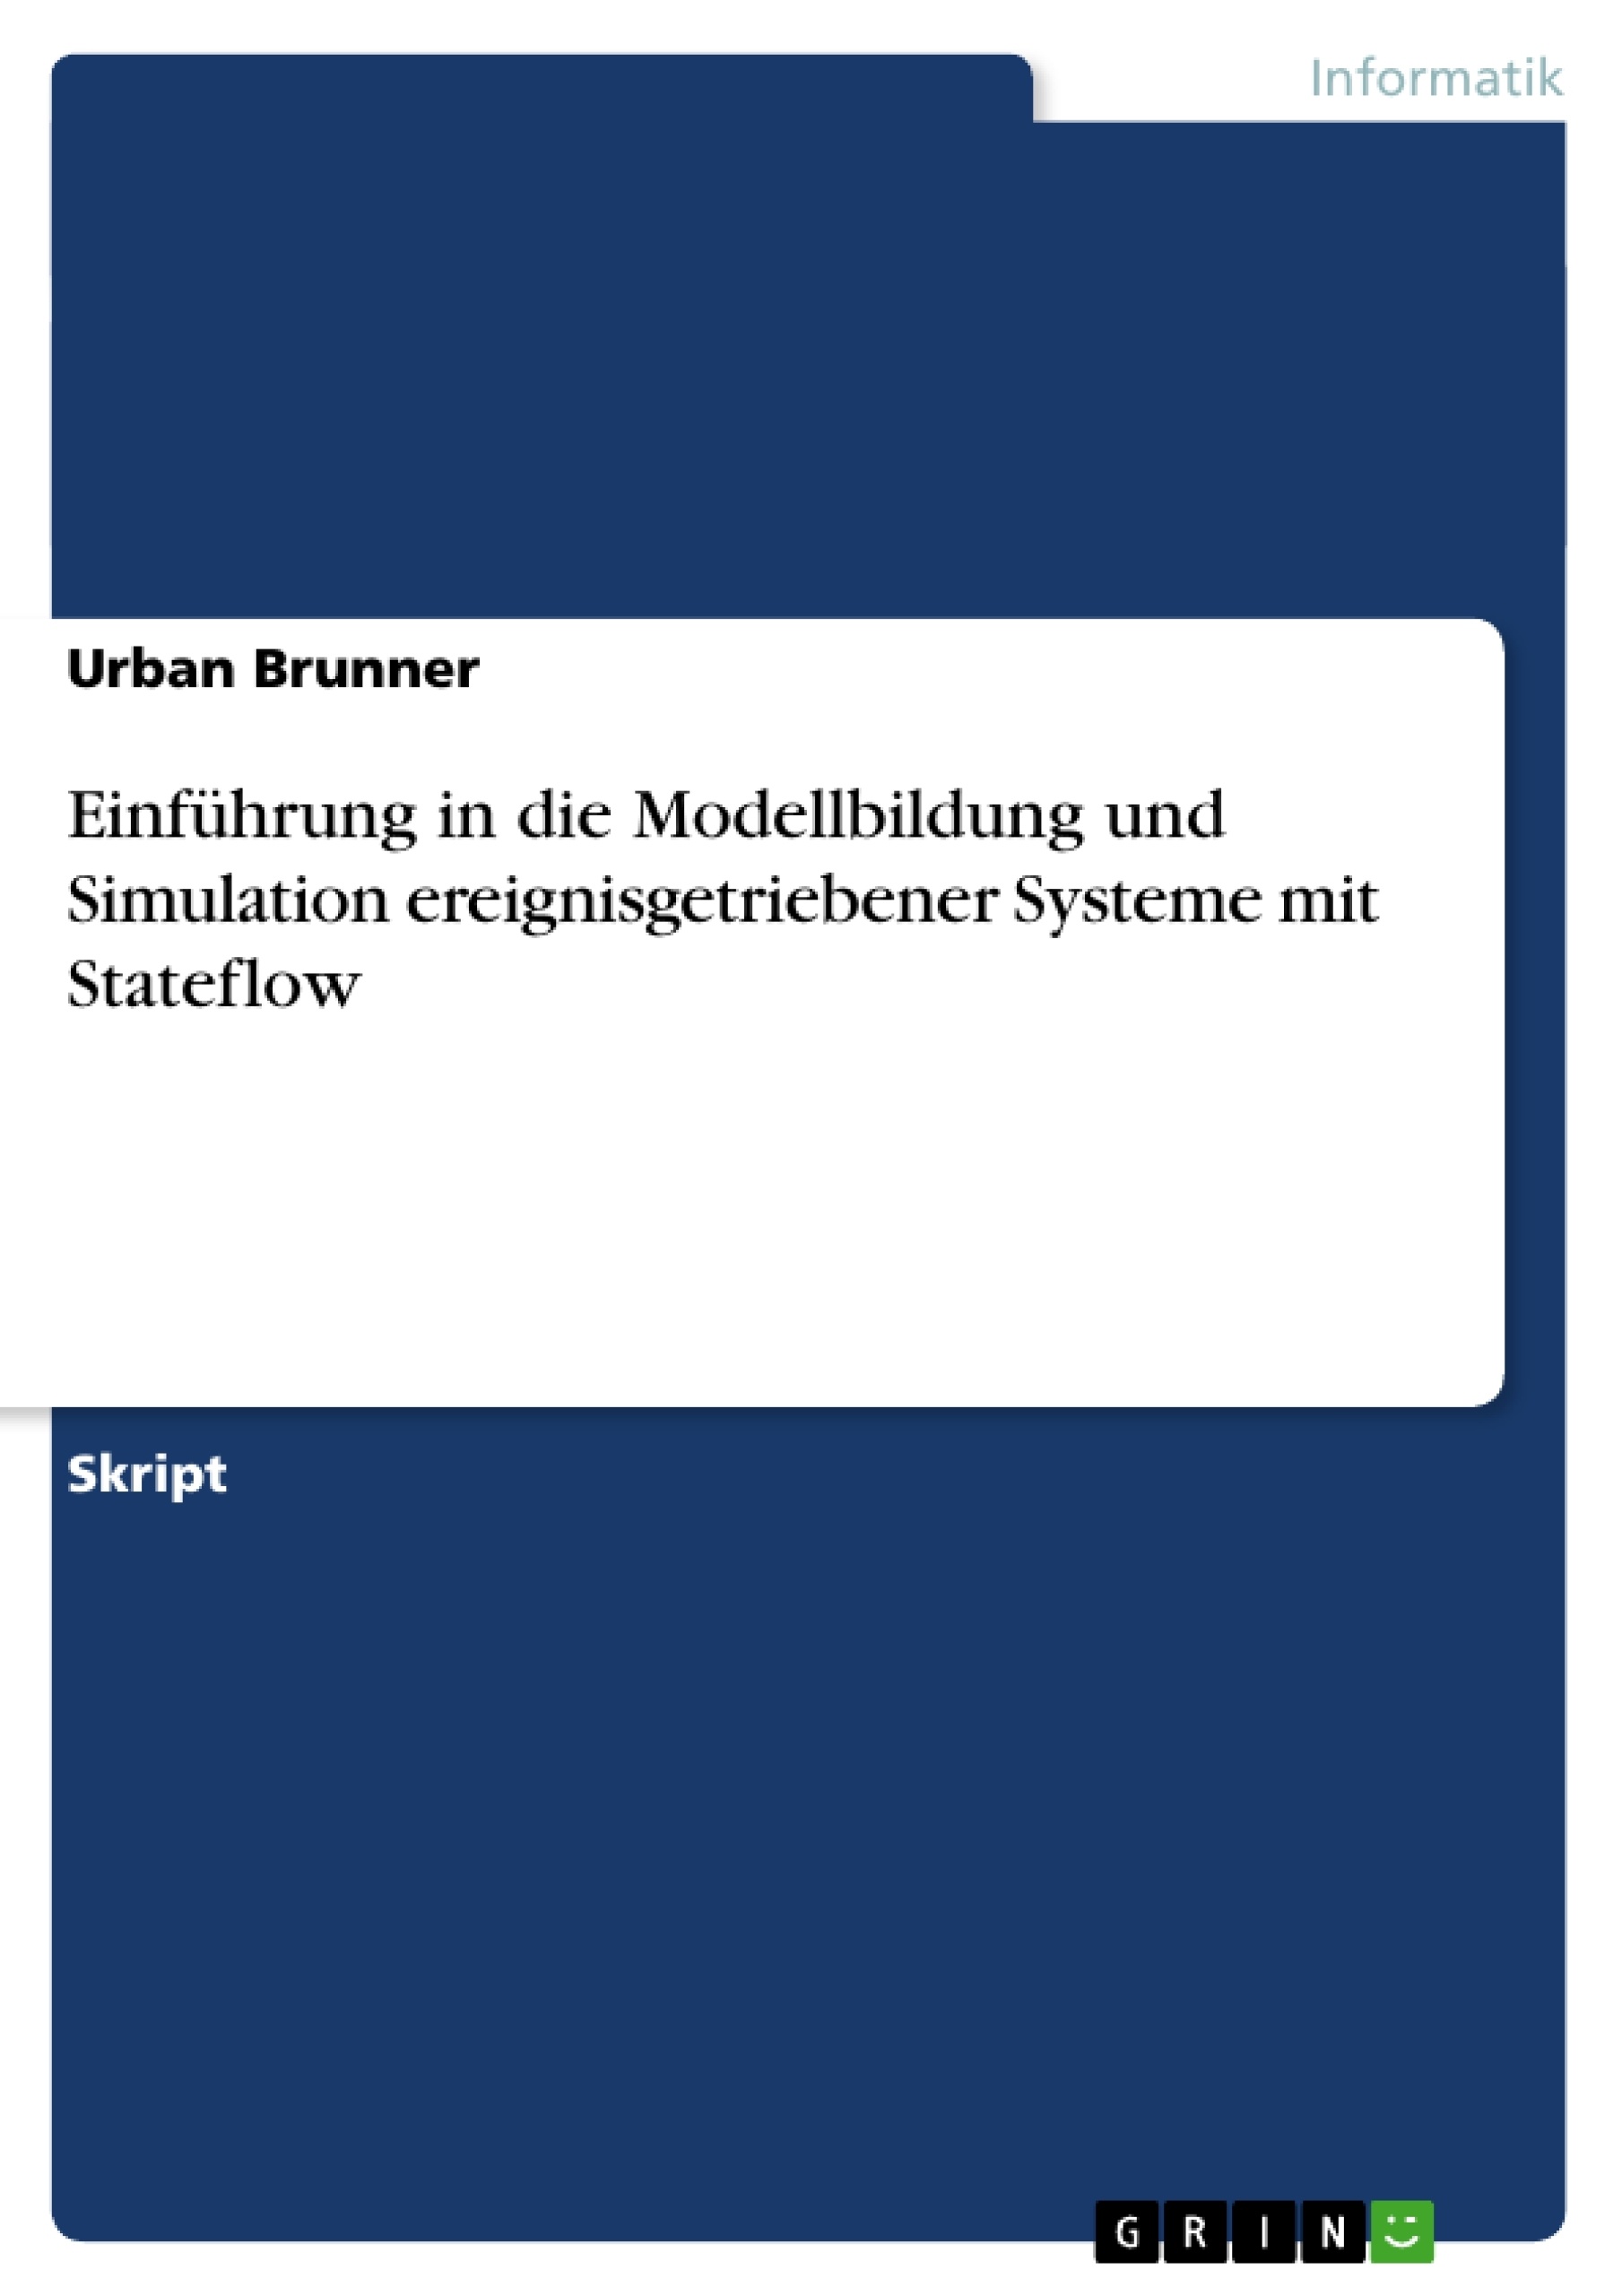 Title: Einführung in die Modellbildung und Simulation ereignisgetriebener Systeme mit Stateflow